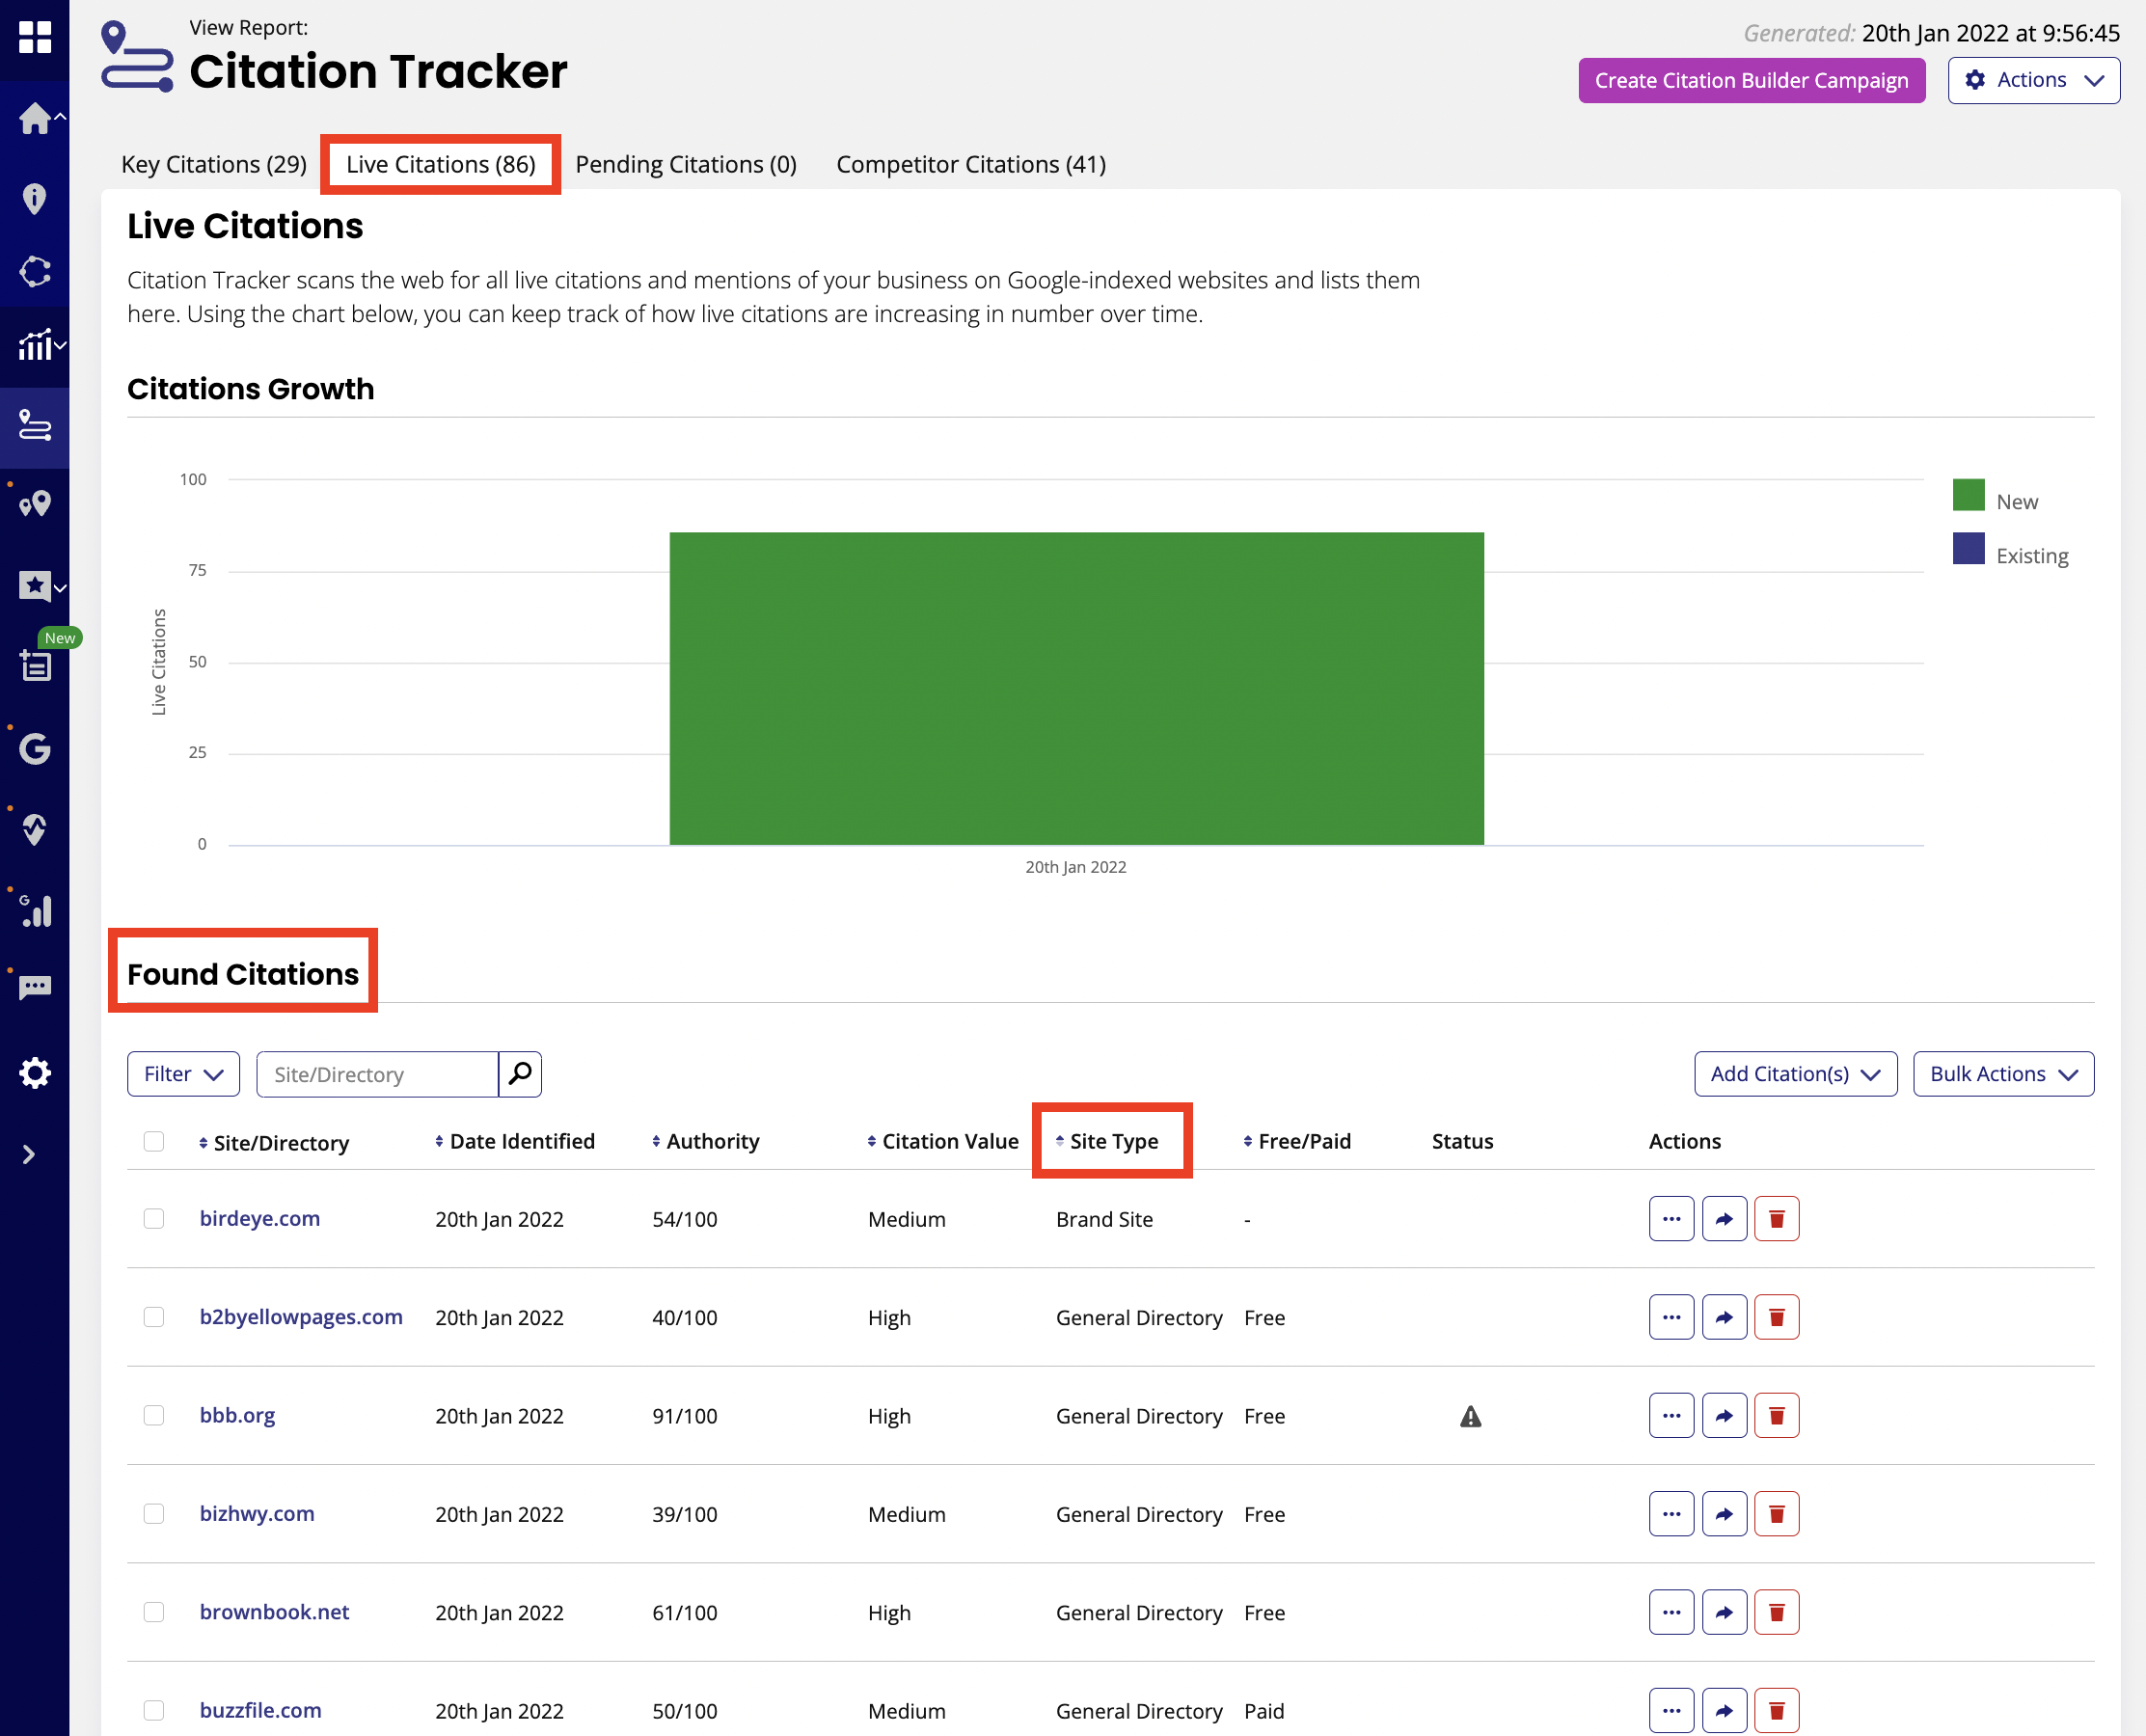 Citation Tracker